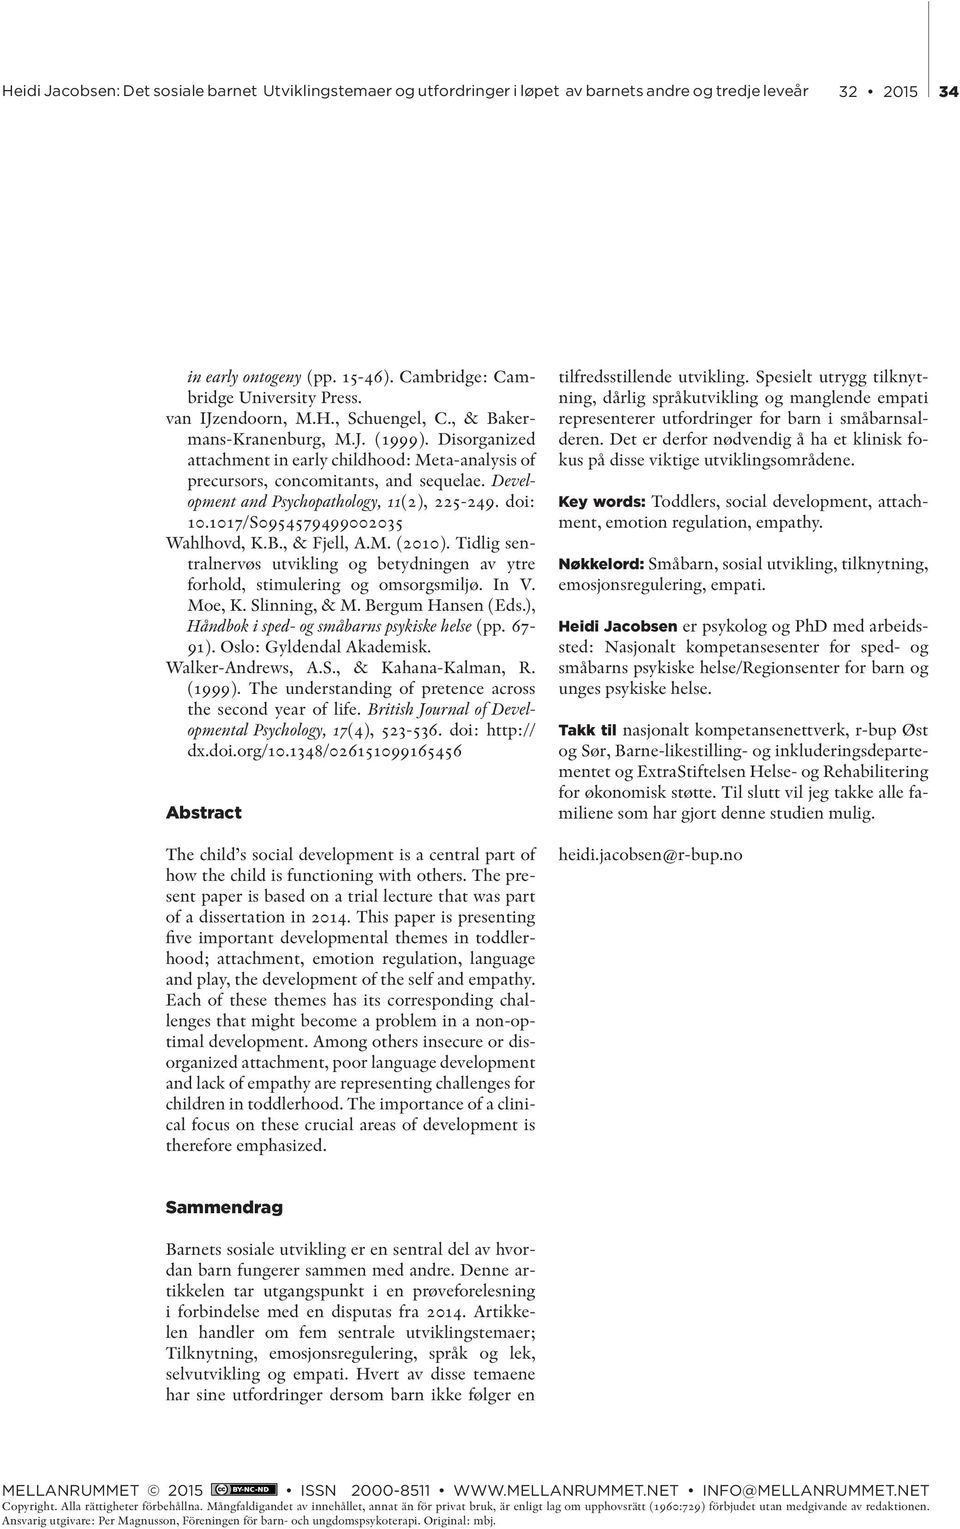 , & Fjell, A.M. (2010). Tidlig sentralnervøs utvikling og betydningen av ytre forhold, stimulering og omsorgsmiljø. In V. Moe, K. Slinning, & M. Bergum Hansen (Eds.